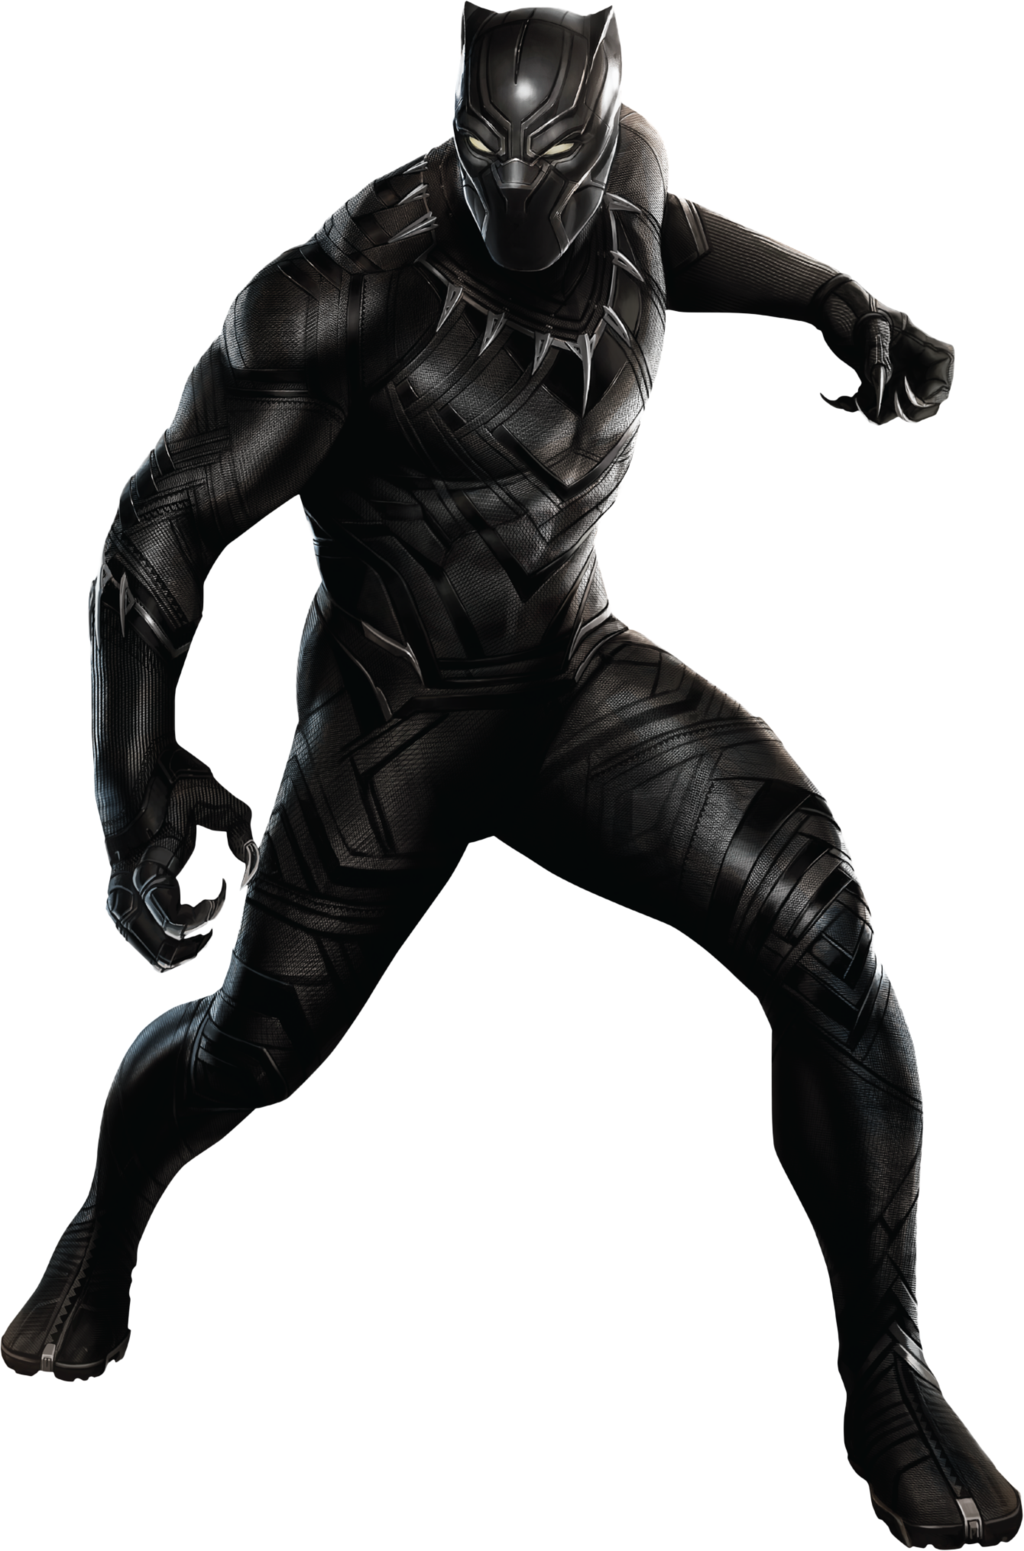 Black Panther (Marvel Cinematic Universe), VS Battles Wiki